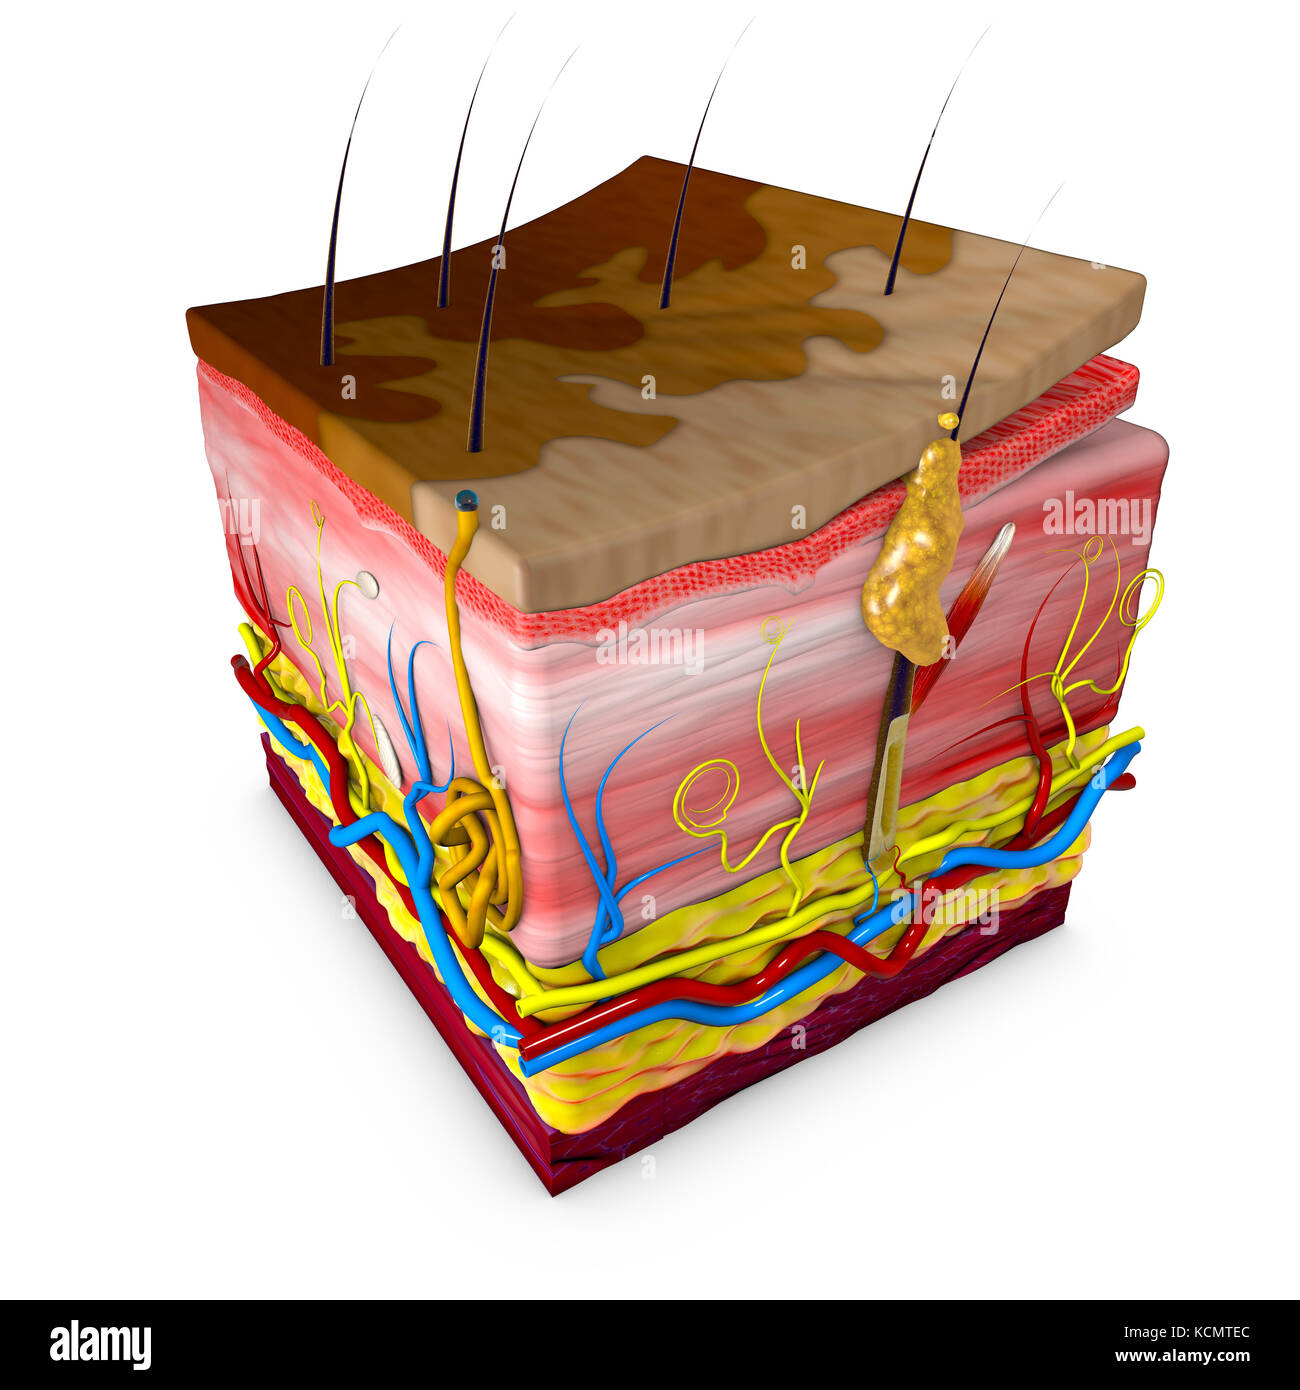 Tigna versicolor è una condizione caratterizzata da una eruzione cutanea sul tronco ed estremità prossimali. sezione della pelle. il rendering in 3D Foto Stock